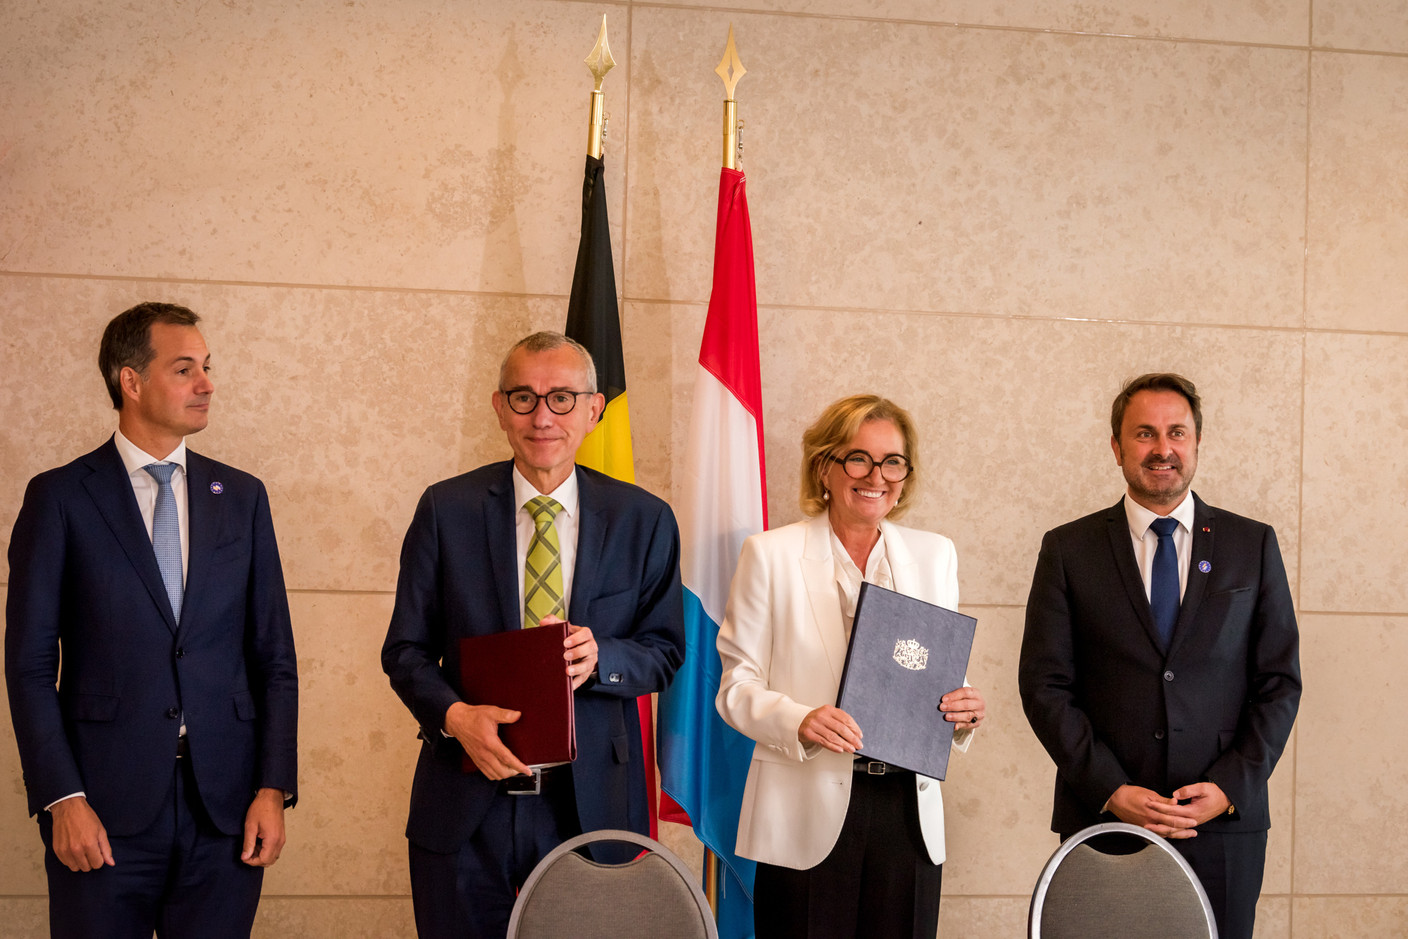 Frank Vandenbroucke et Paulette Lenert ont signé une déclaration commune sur la coopération sanitaire transfrontalière, sujet d’actualité par temps de Covid. (Photo: Nader Ghavami)